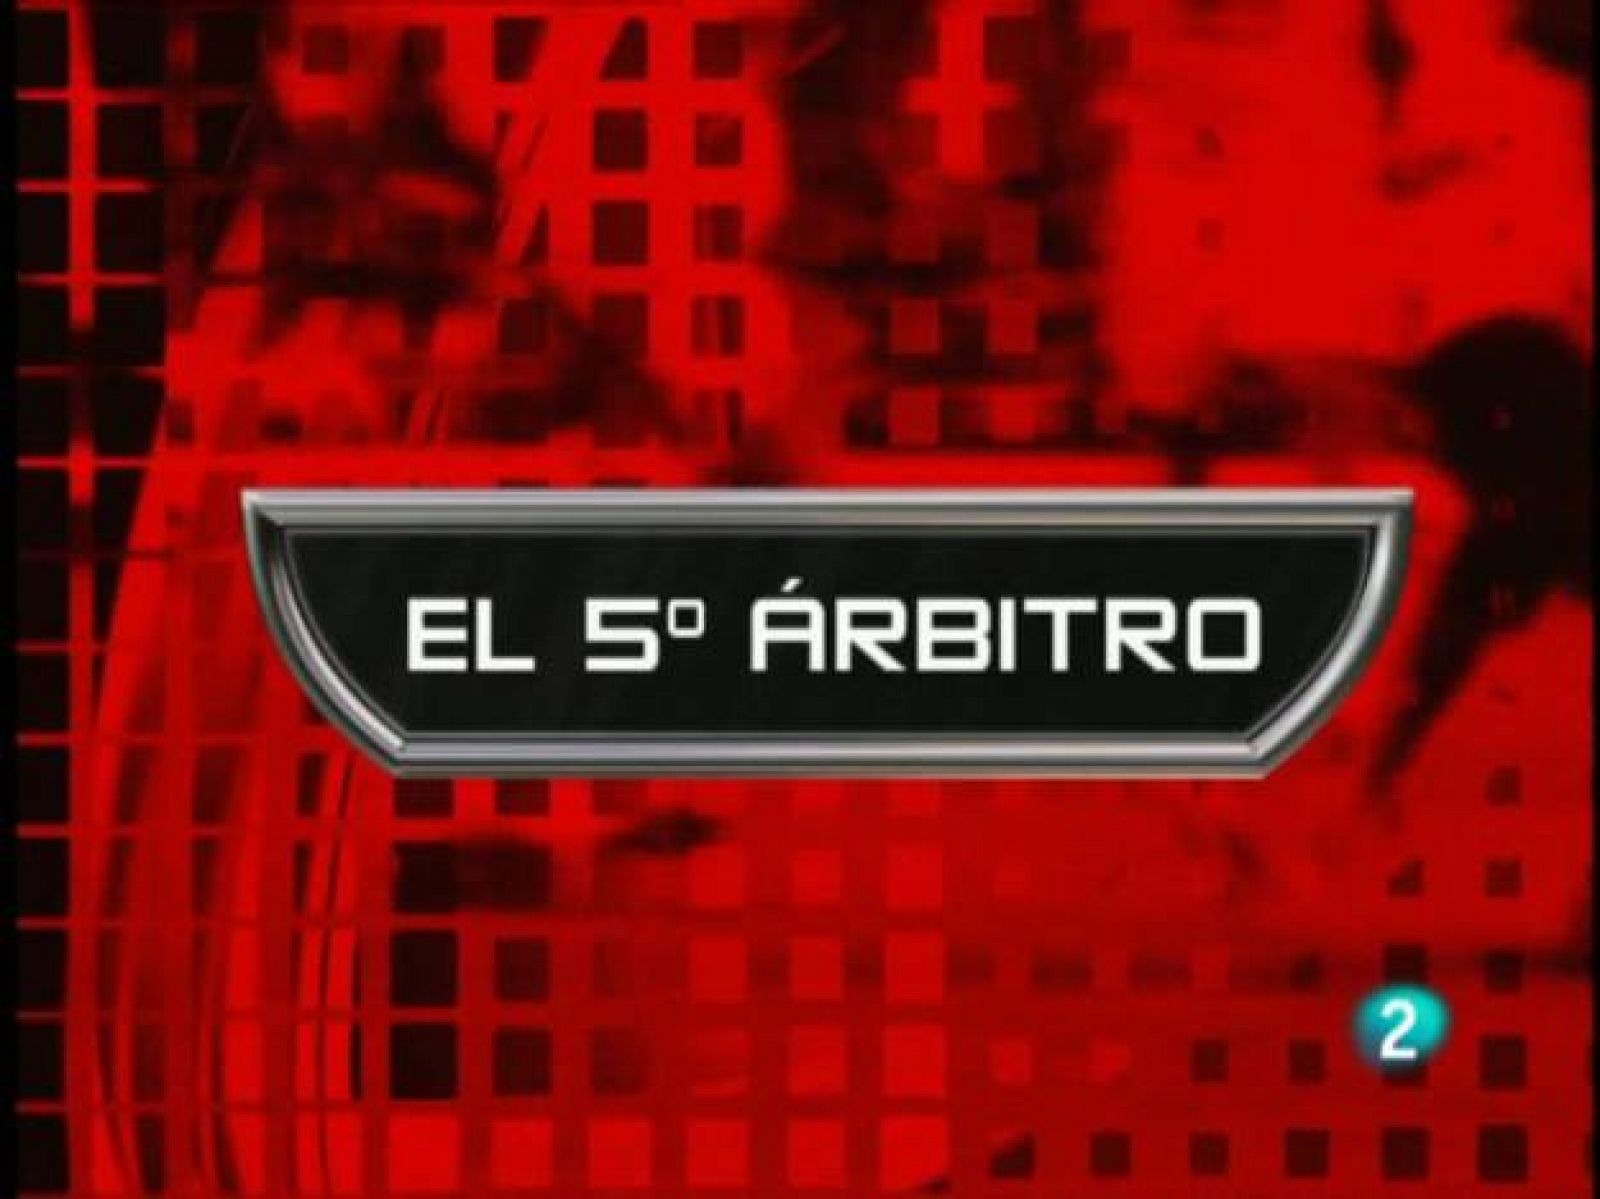 5 árbitro: Valencia-Atlético